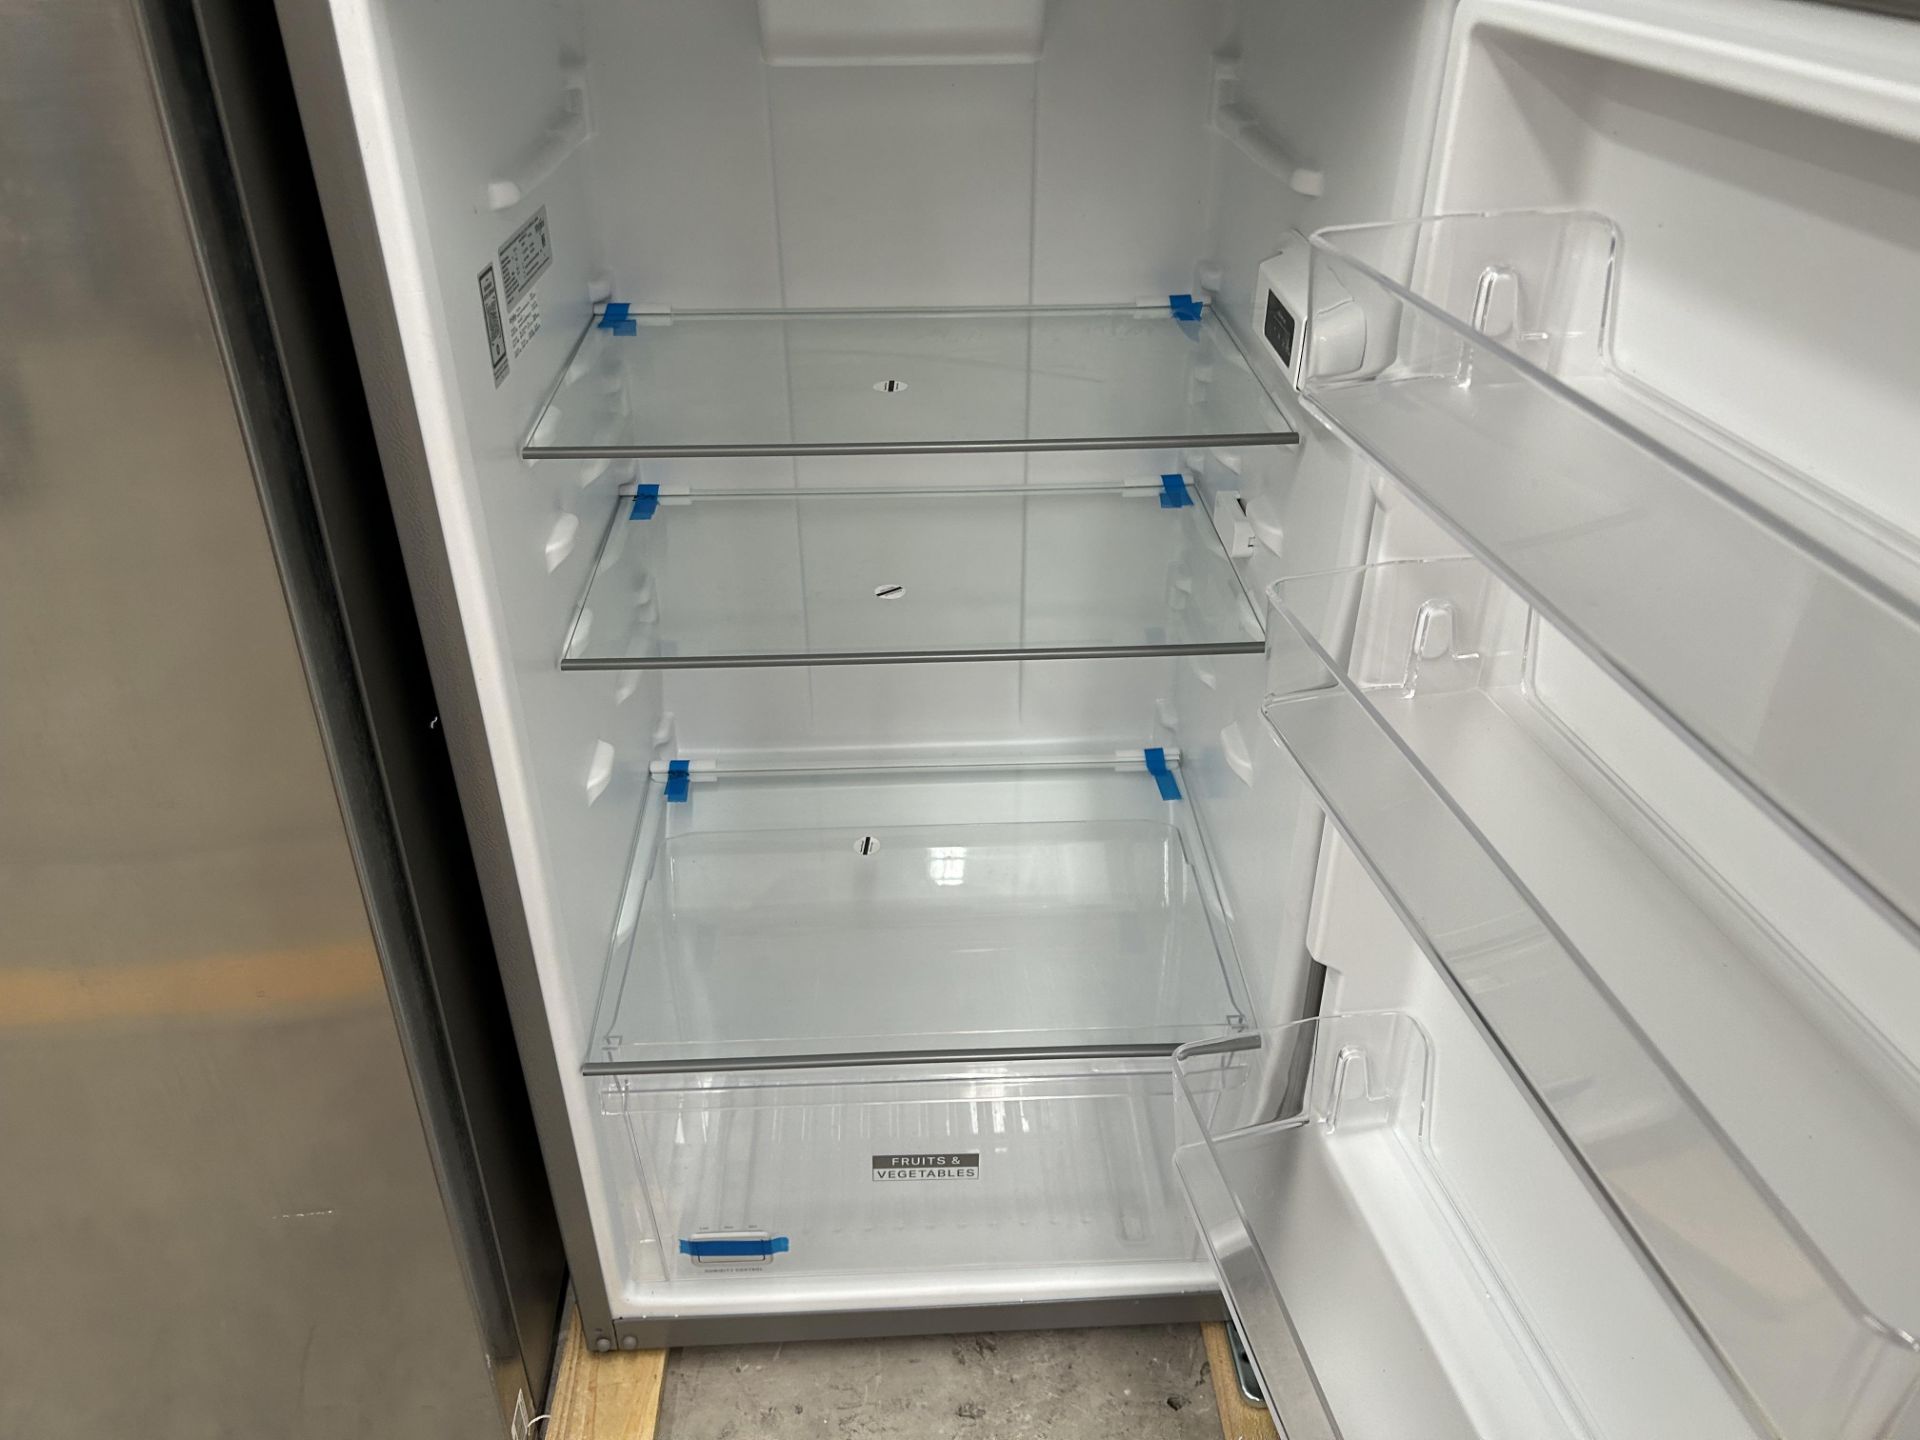 Lote de 2 refrigeradores contiene: 1 Refrigerador Marca LG, Modelo GT29BPPK, Serie 41191, Color GRI - Image 7 of 10